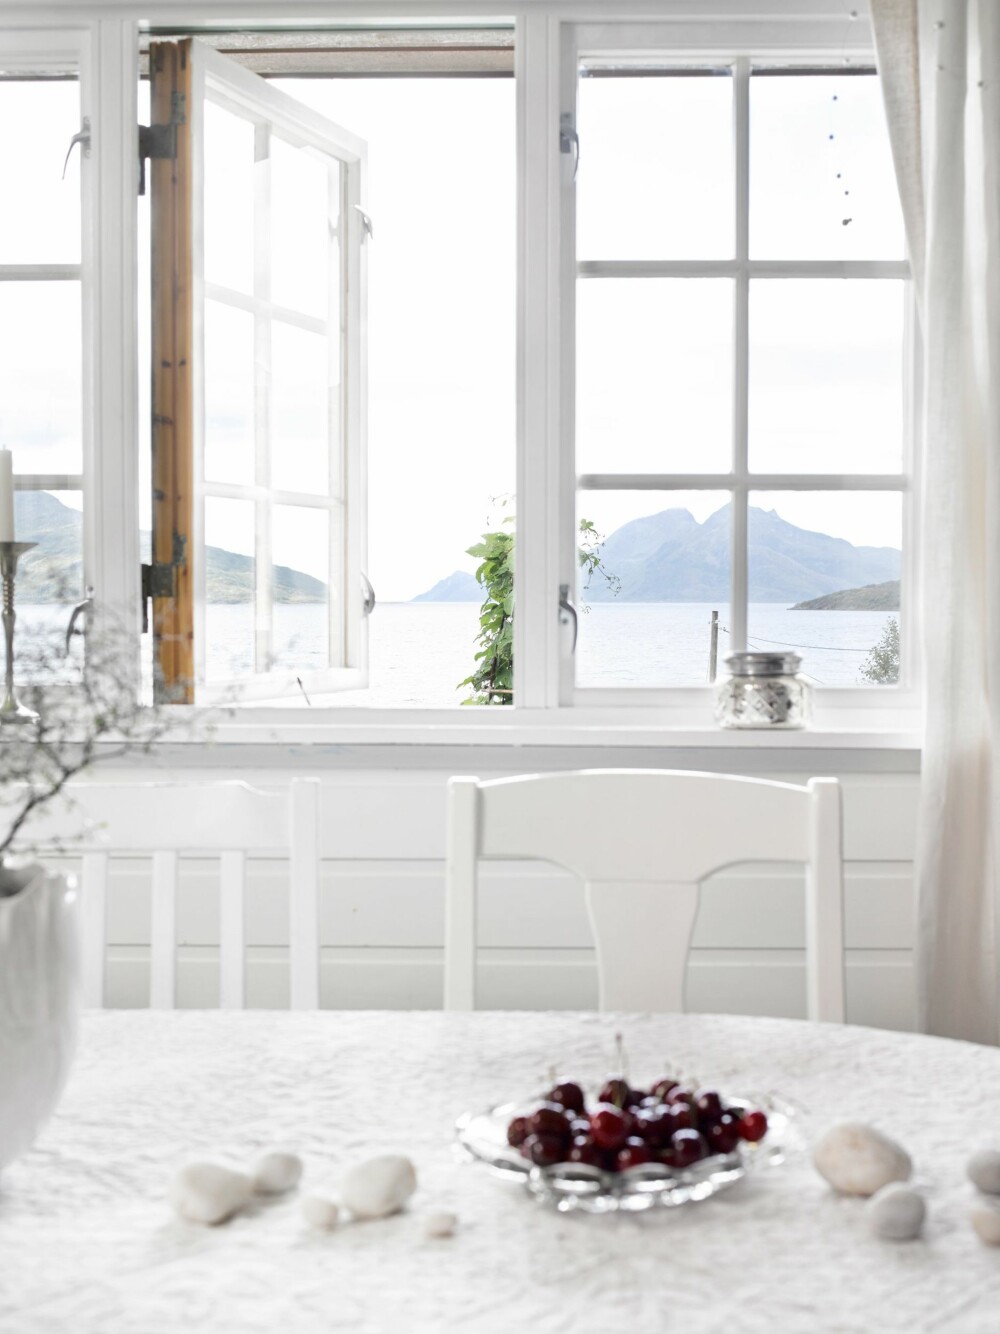 RETT UT: Fra spisestuen kan det føles som om man
sitter i vannkanten. Den nydelige utsikten kommer
virkelig til sin rett. Skulsfjorden glitrer med fjellene
Vengsøya og Blåmann i bakgrunnen.